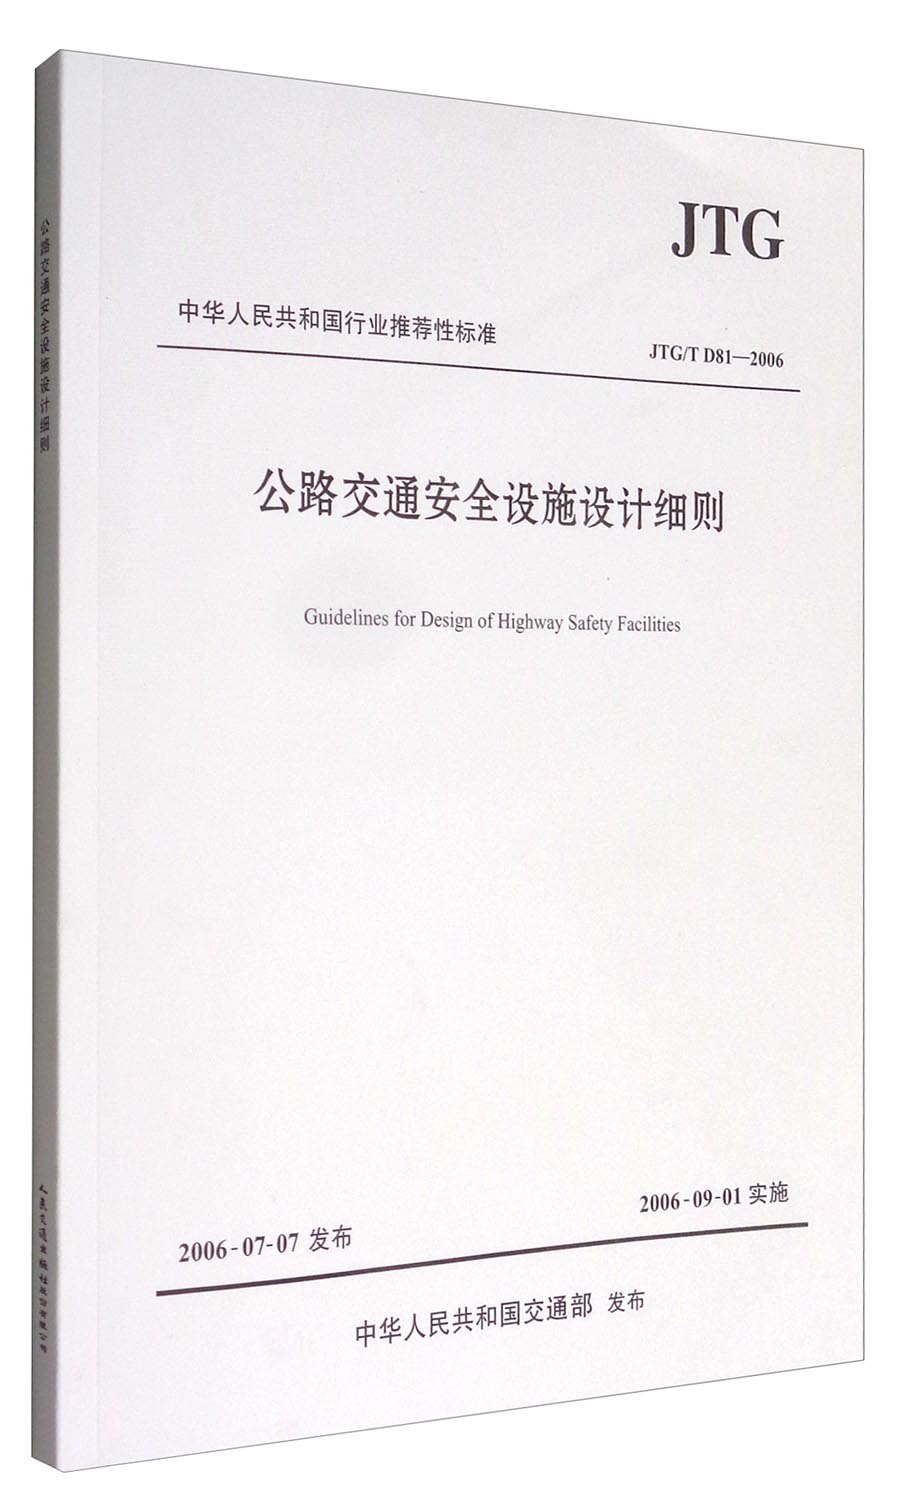 中华人民共和国行业推荐性标准（JTG/T D81-2006）：公路交通安全设施设计细则 txt格式下载